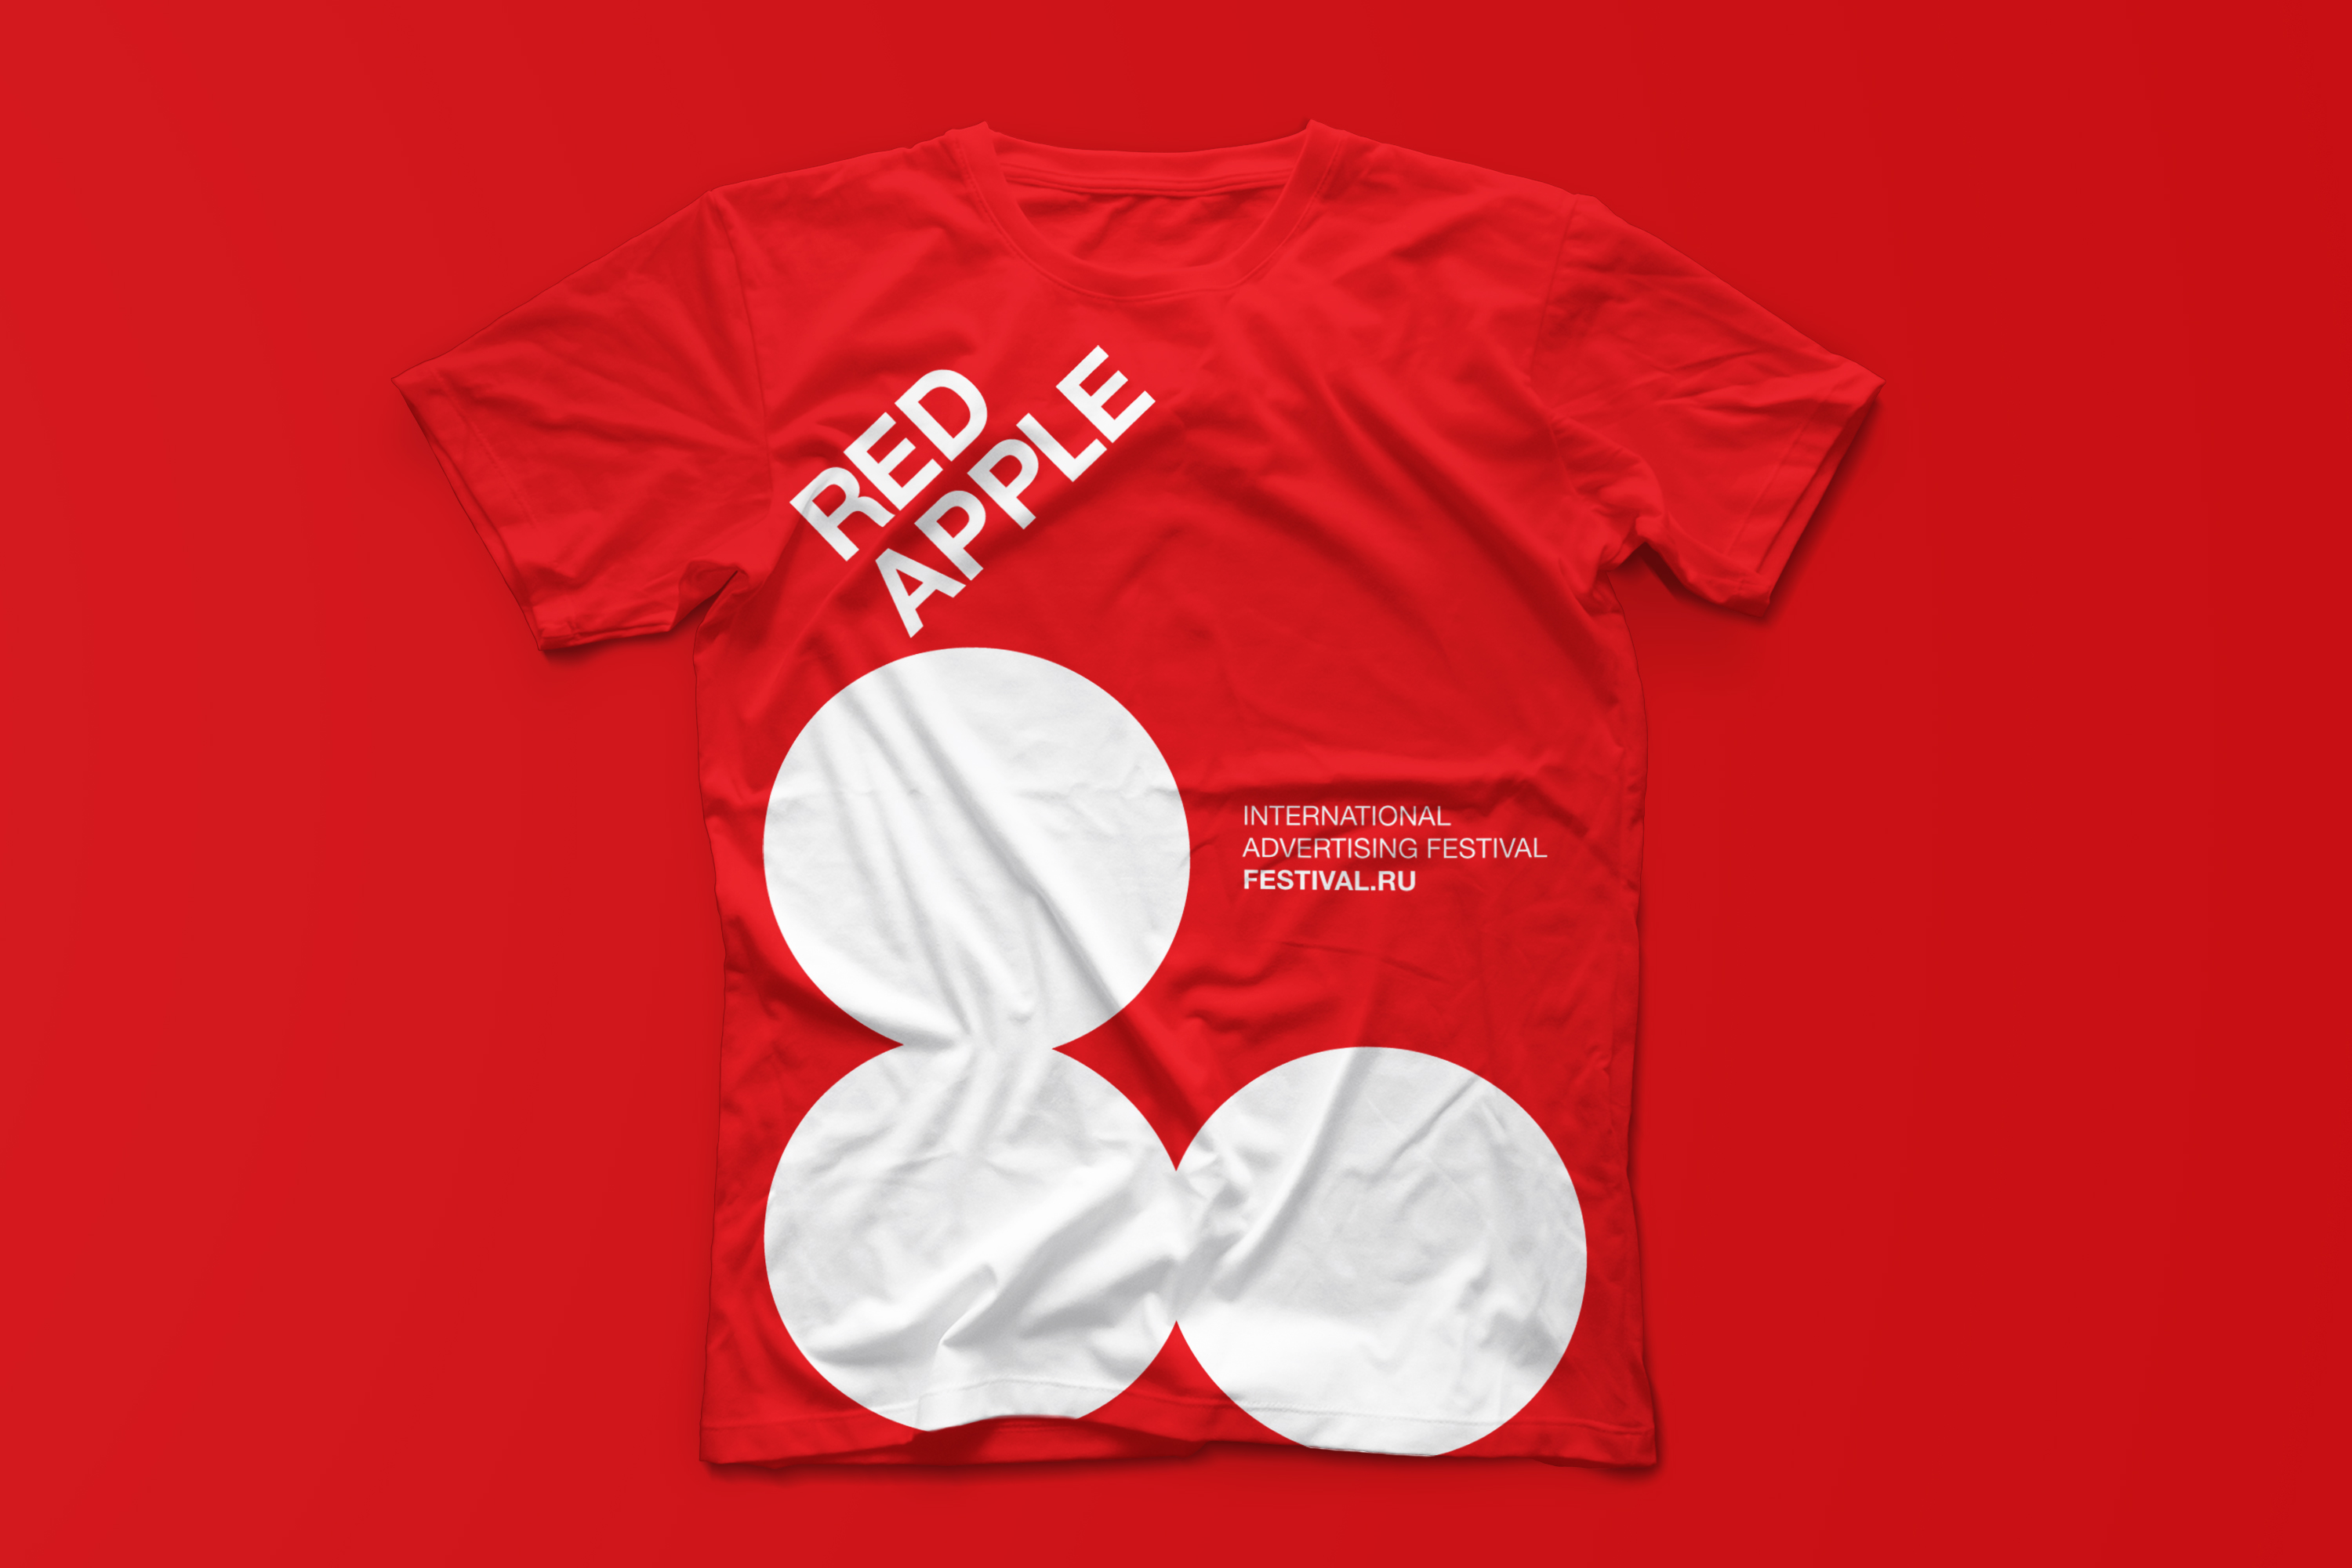 московский международный фестиваль рекламы и маркетинга Red Apple, фирменный стиль, айдентика, креативная концепция, визуальная идентификация, брендинговое агентство Depot WPF